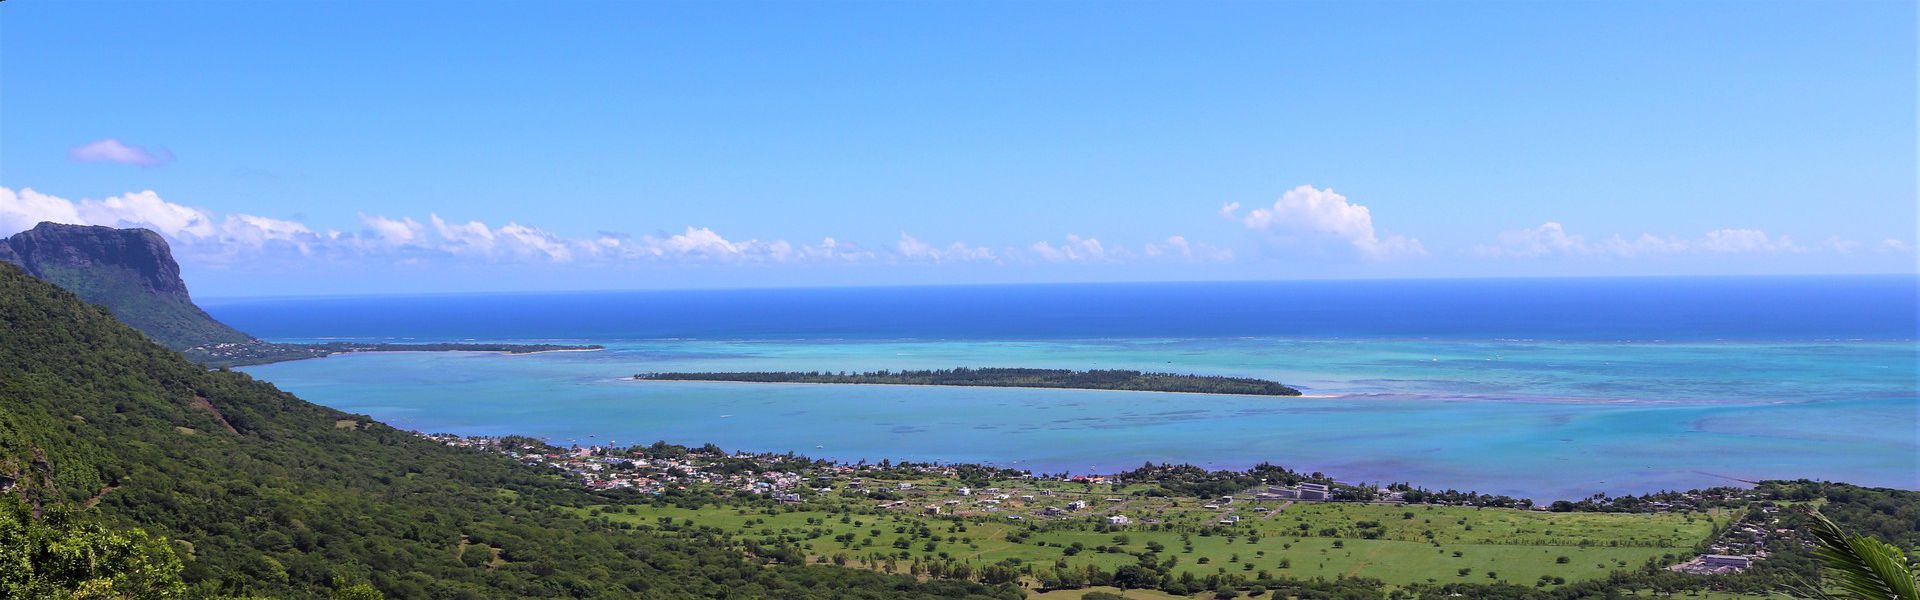 Le bénitier, qui est aussi connu comme le tridacne géant, est un coquillage de très grande taille. C’est peut-être de là que l’île aux Bénitiers tient son nom, car un îlot en forme de gros coquillage, le Crystal Rock, accueille les visiteurs avant qu’ils n’y arrivent. L’île aux Bénitiers est située au sud-ouest de Maurice, à presque 500 mètres du village côtier de La Gaulette.